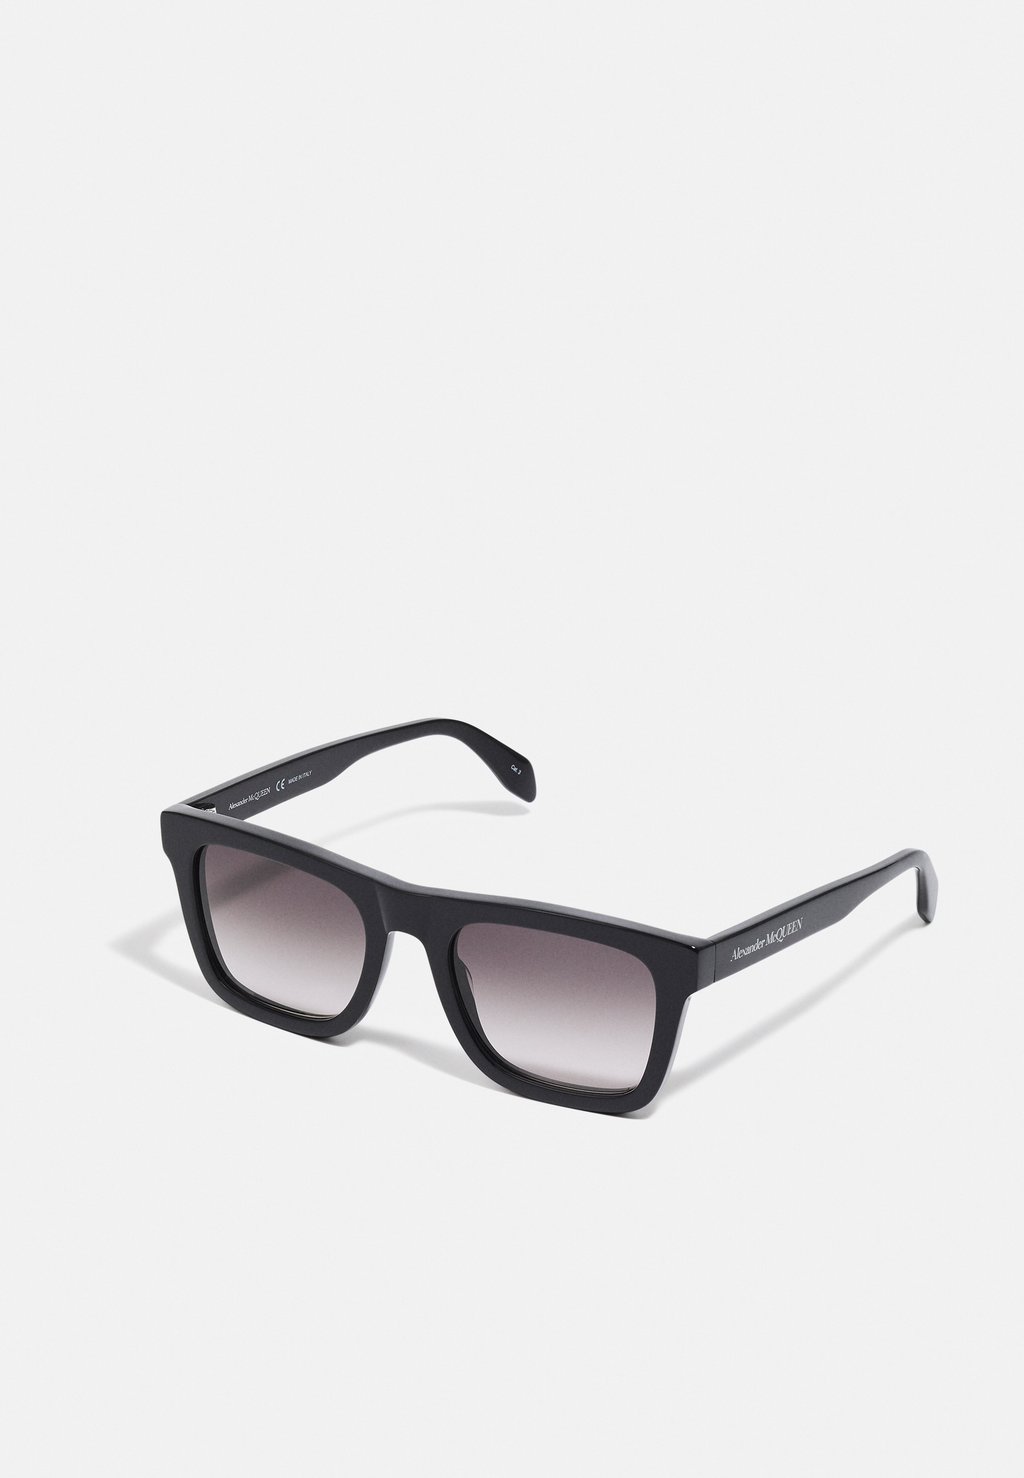 Солнцезащитные очки Signature Прямоугольные Солнцезащитные Очки Унисекс Alexander McQueen, цвет black/grey 35179